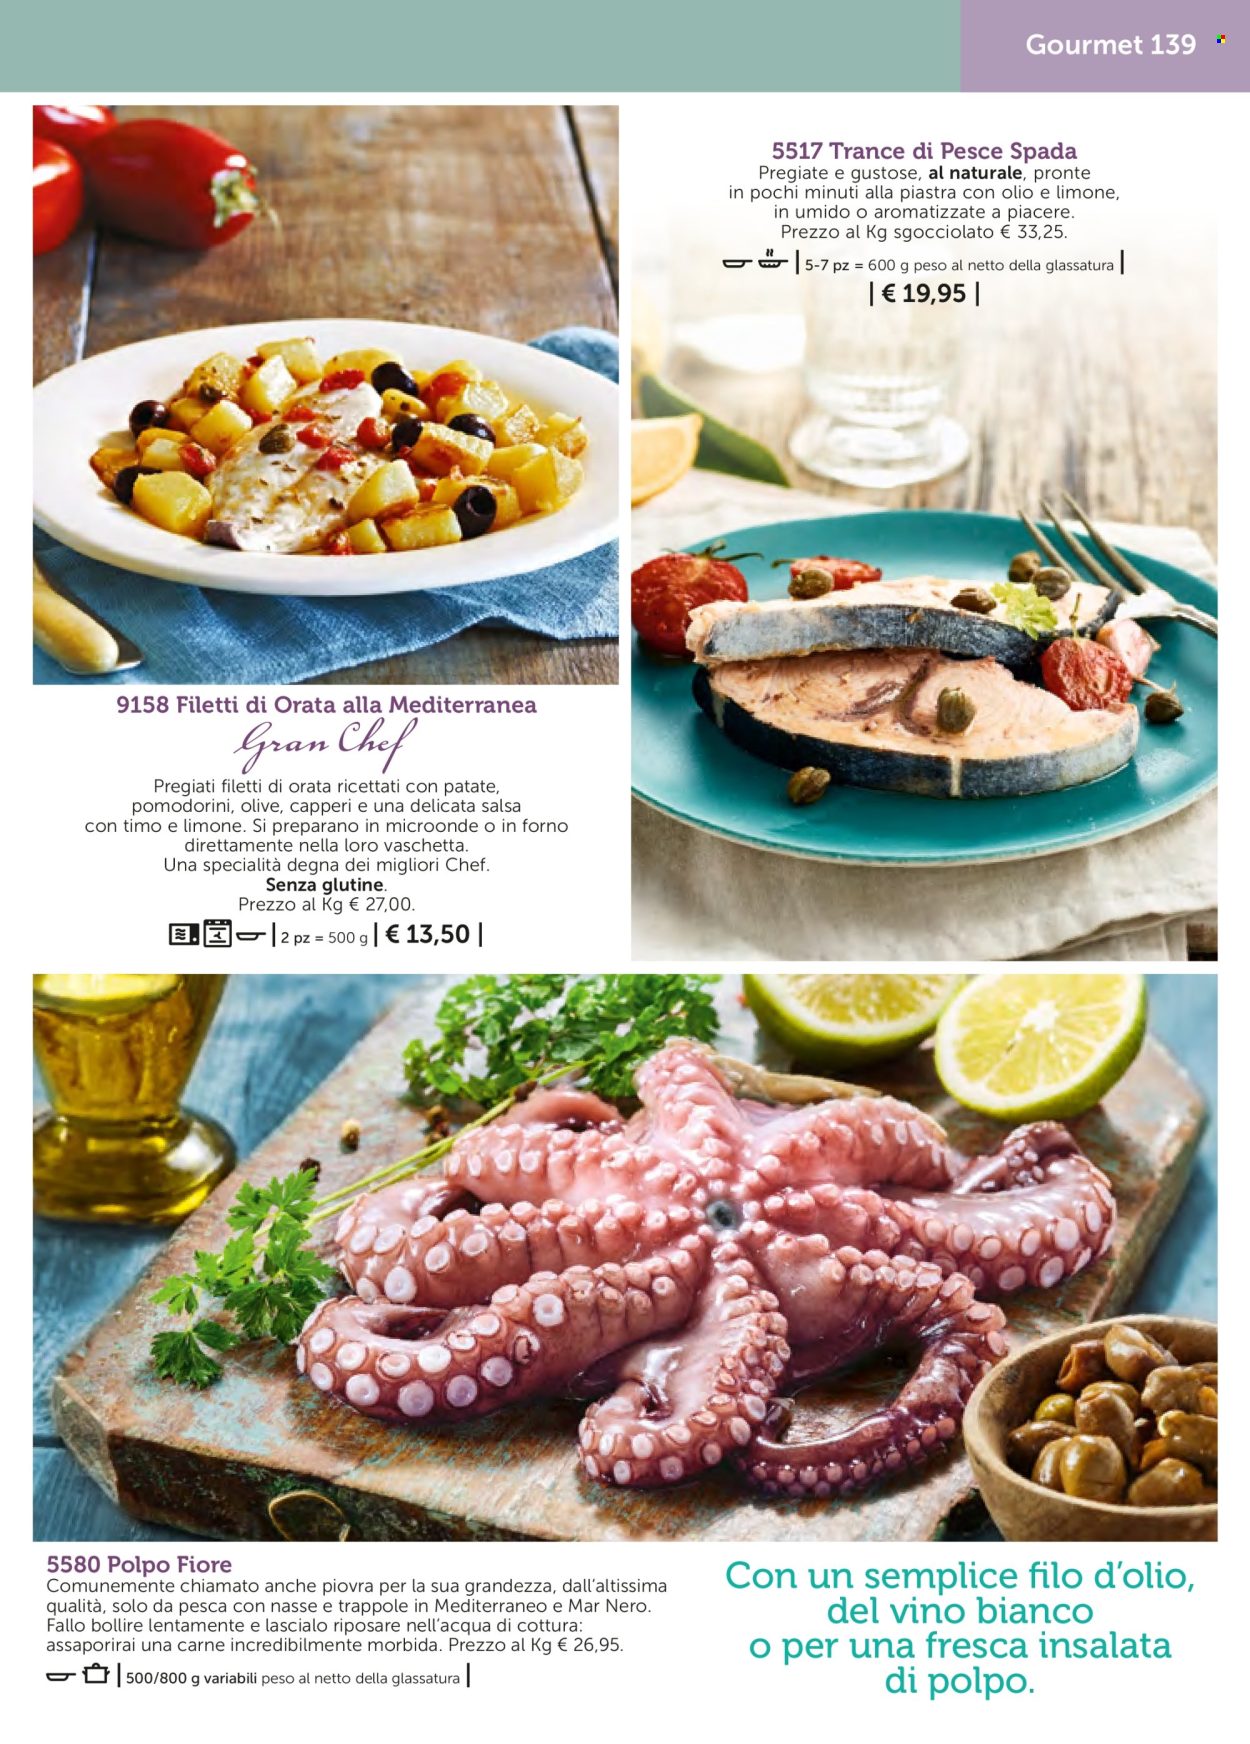 thumbnail - Volantino Bofrost - Prodotti in offerta - pesce spada, orata, insalata di polpo, vino bianco, bevanda alcolica. Pagina 139.